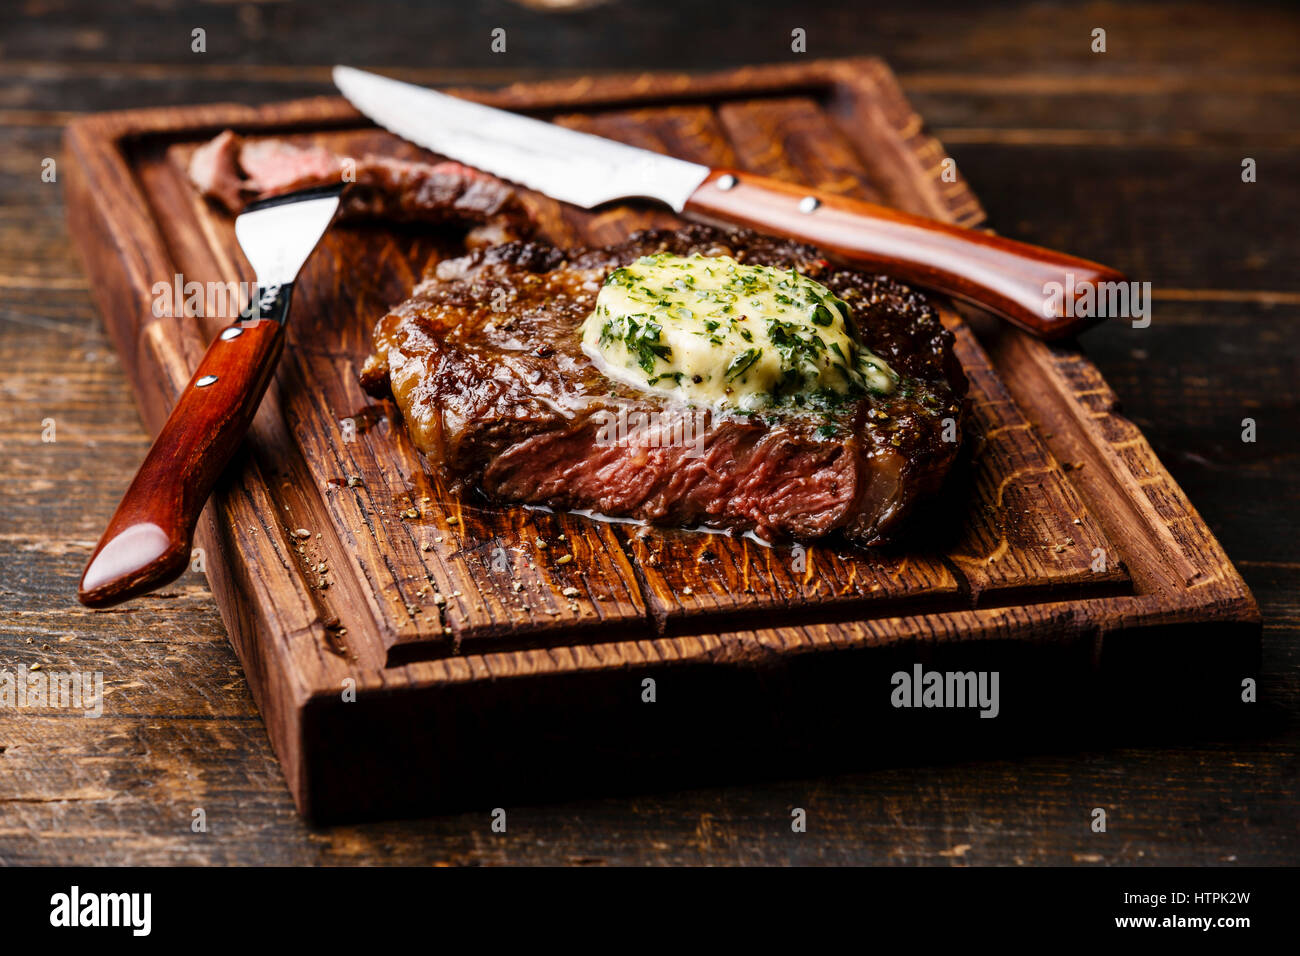 Moyen grillé steak Ribeye au beurre d'herbes sur une planche à découper portion Banque D'Images